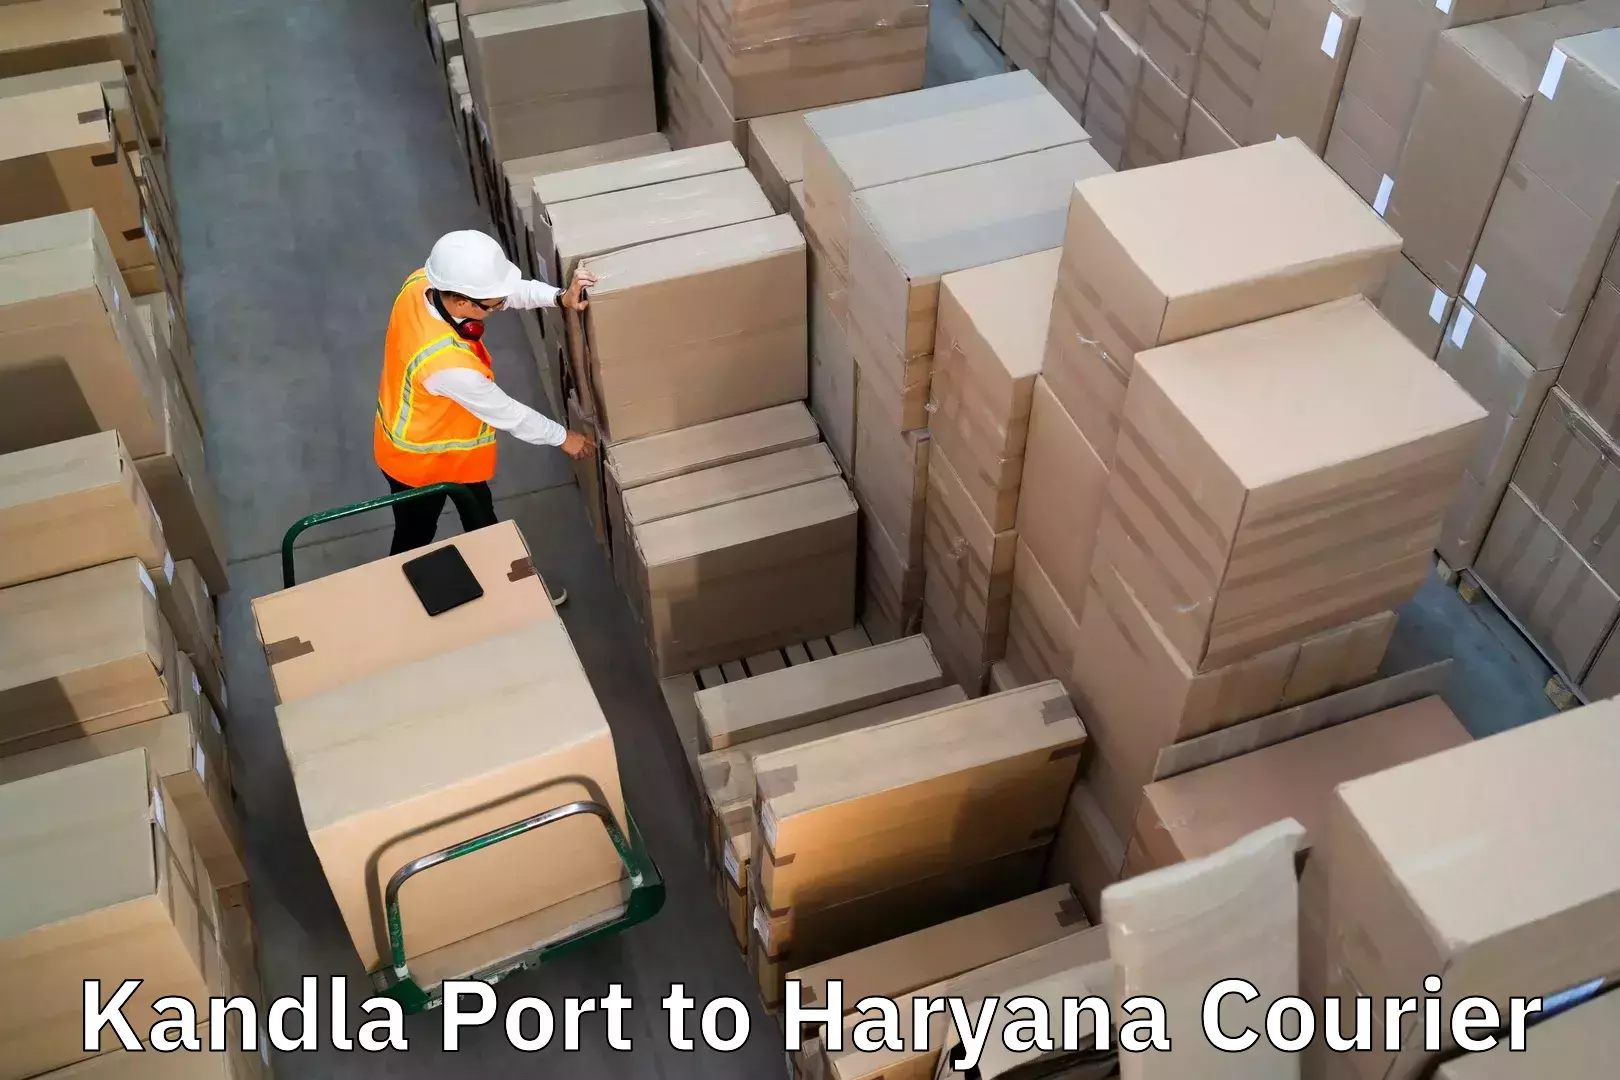 Reliable luggage courier Kandla Port to Agroha